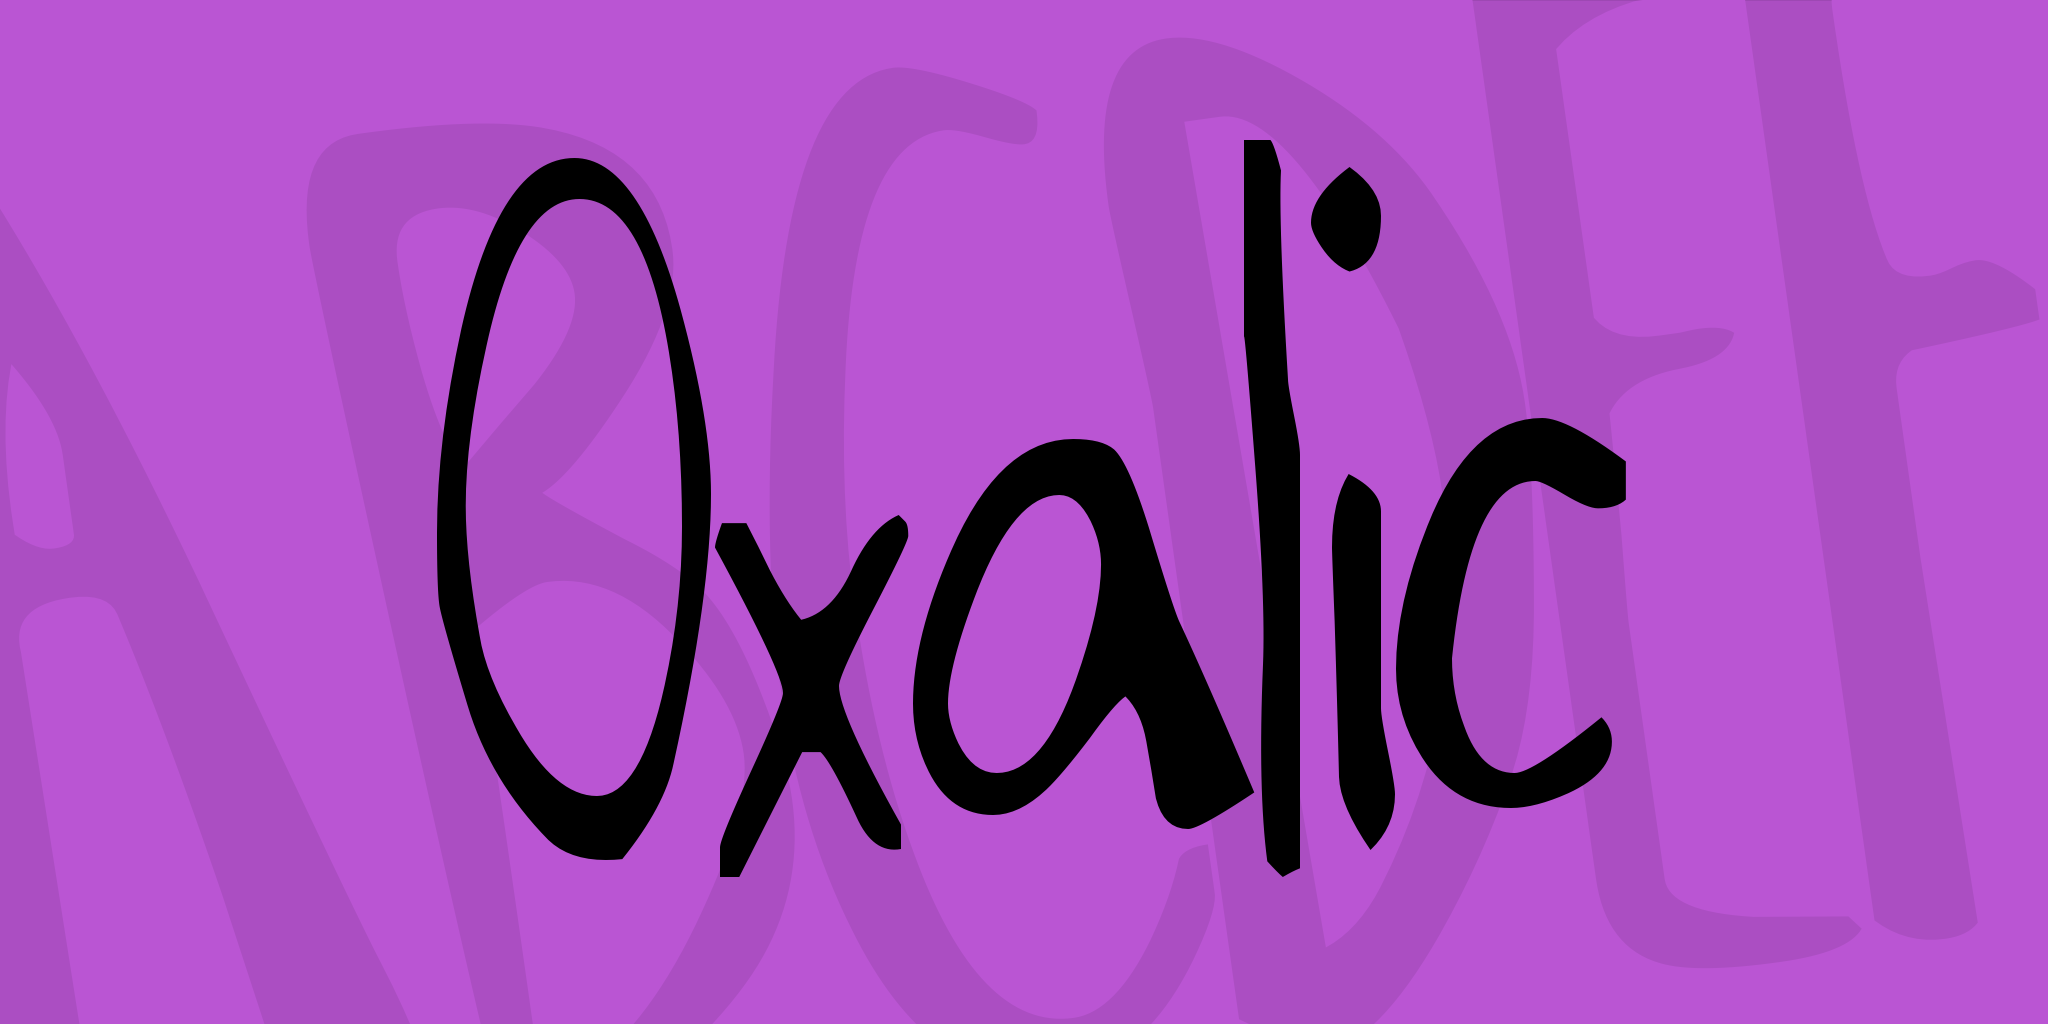 Oxalic